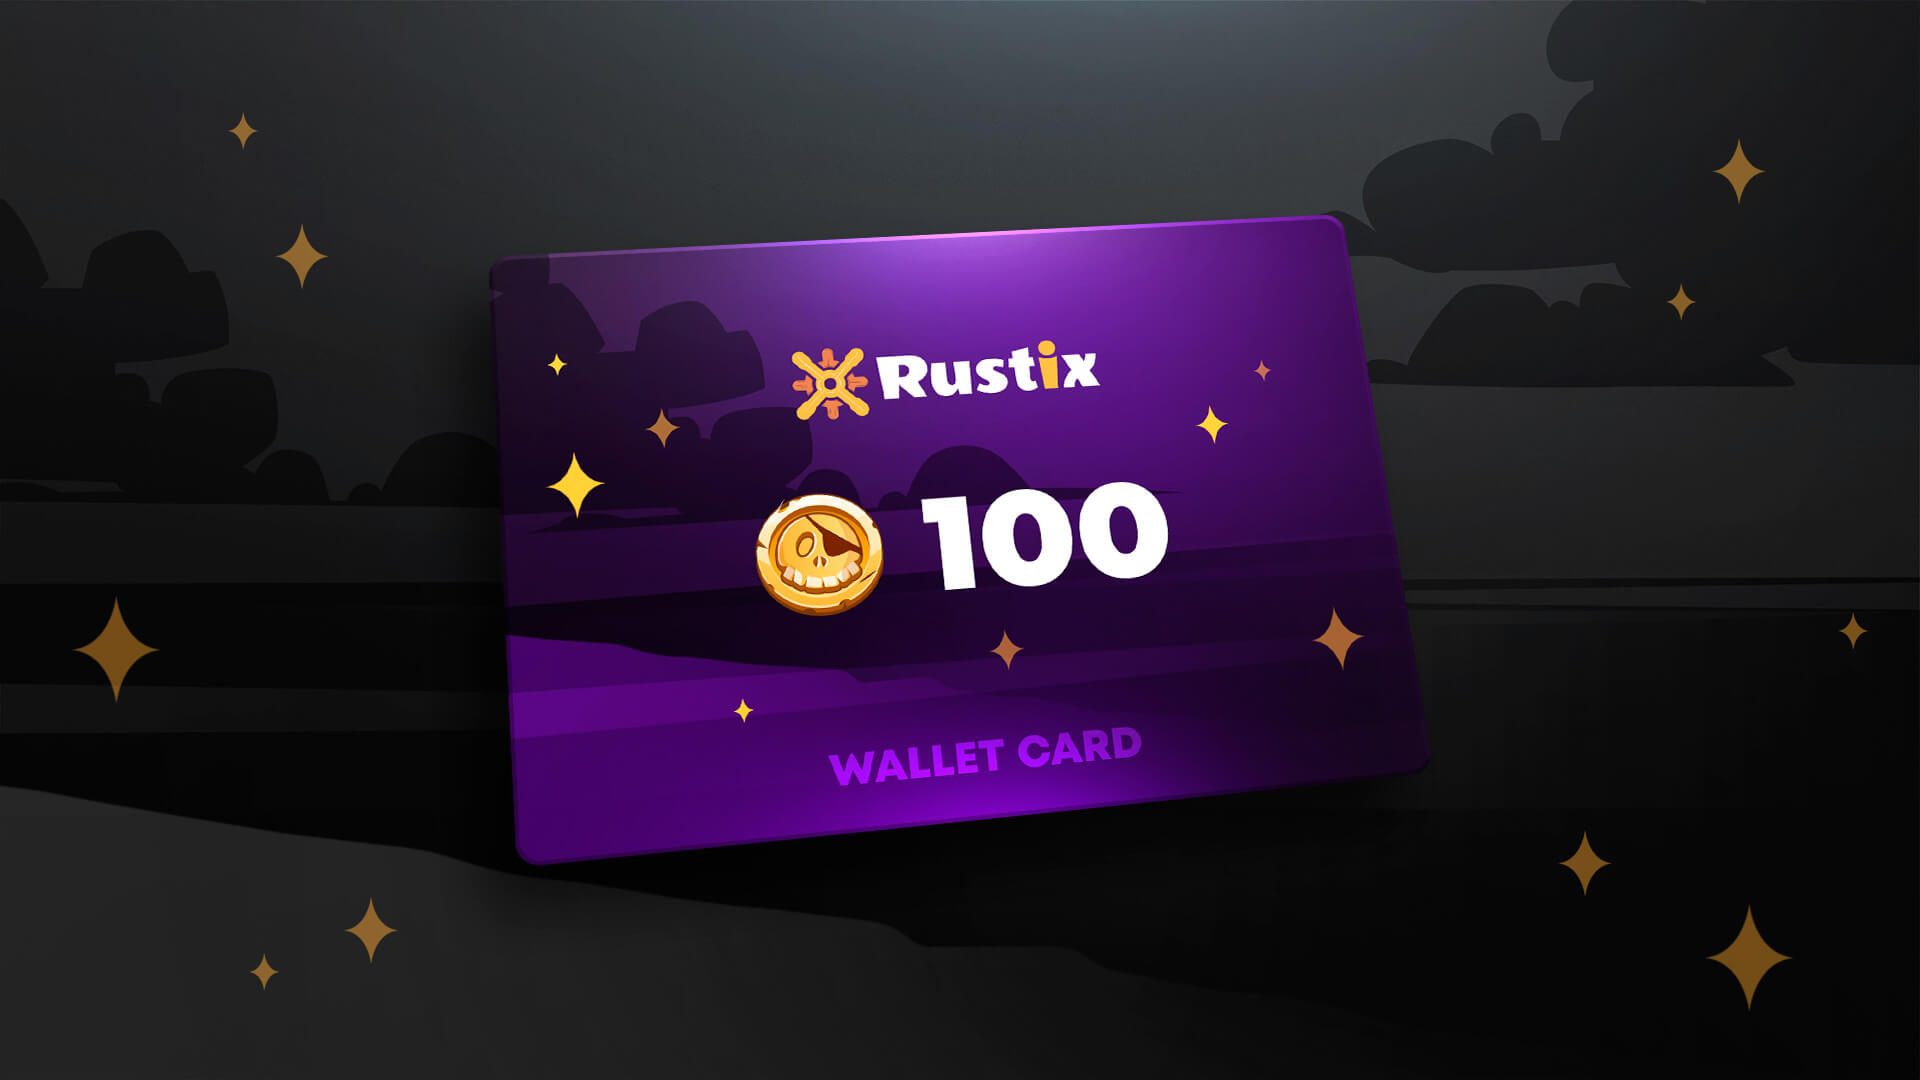 Rustix.io 100 USD Wallet Card Code $113